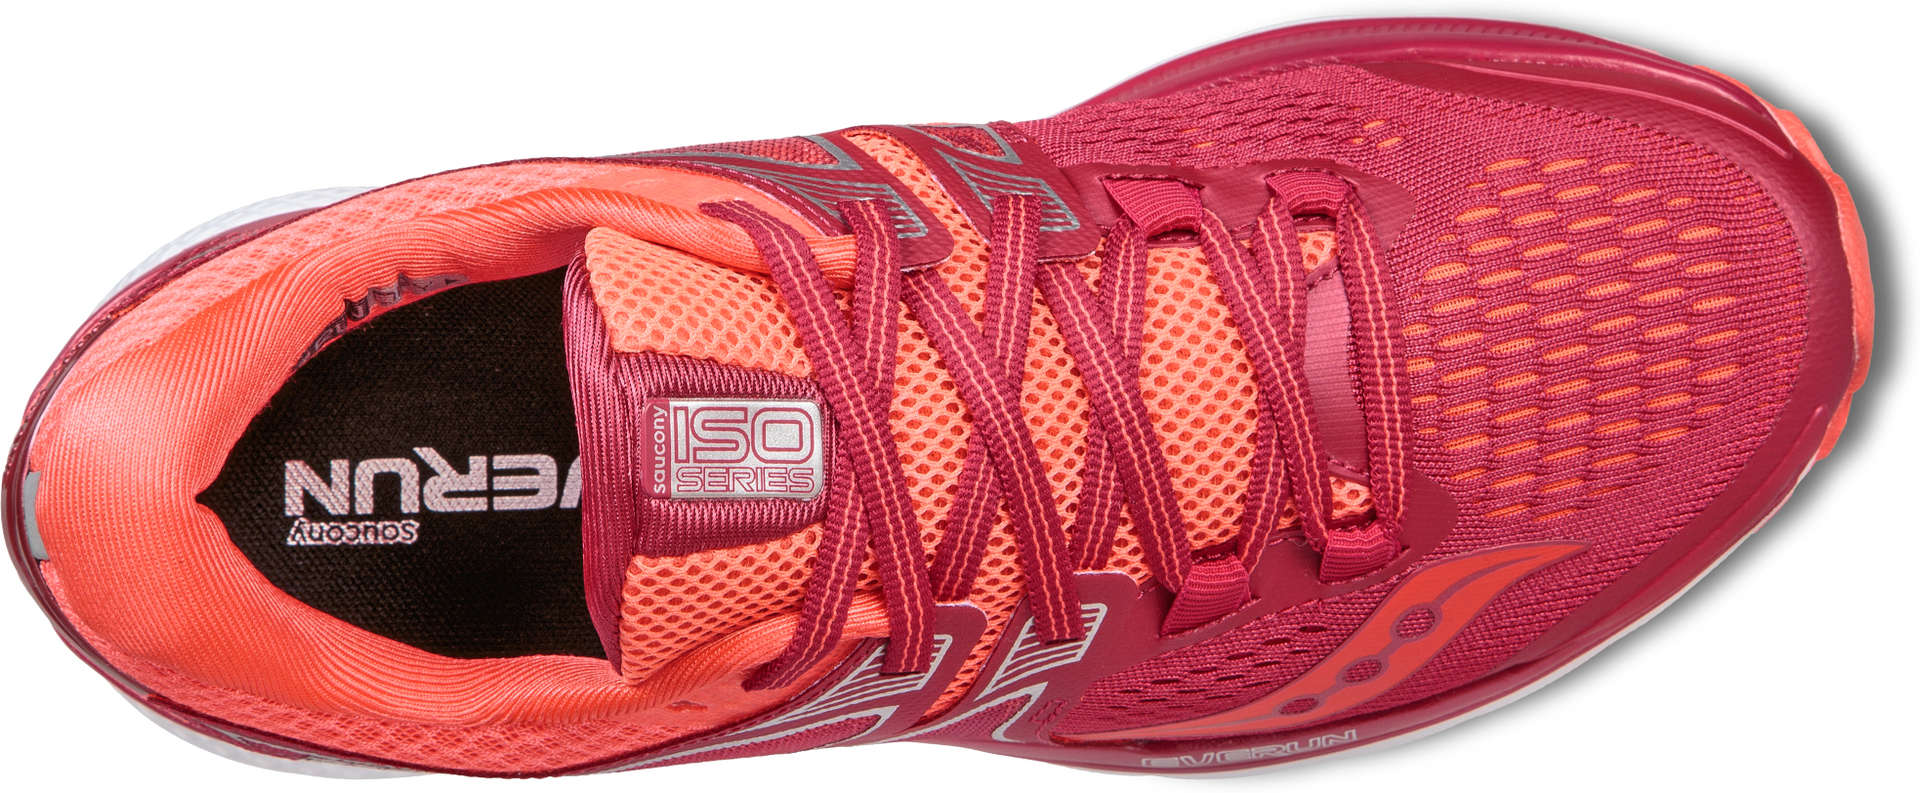 Saucony Triumph ISO 3 Hardloopschoenen Paars/Roze Dames